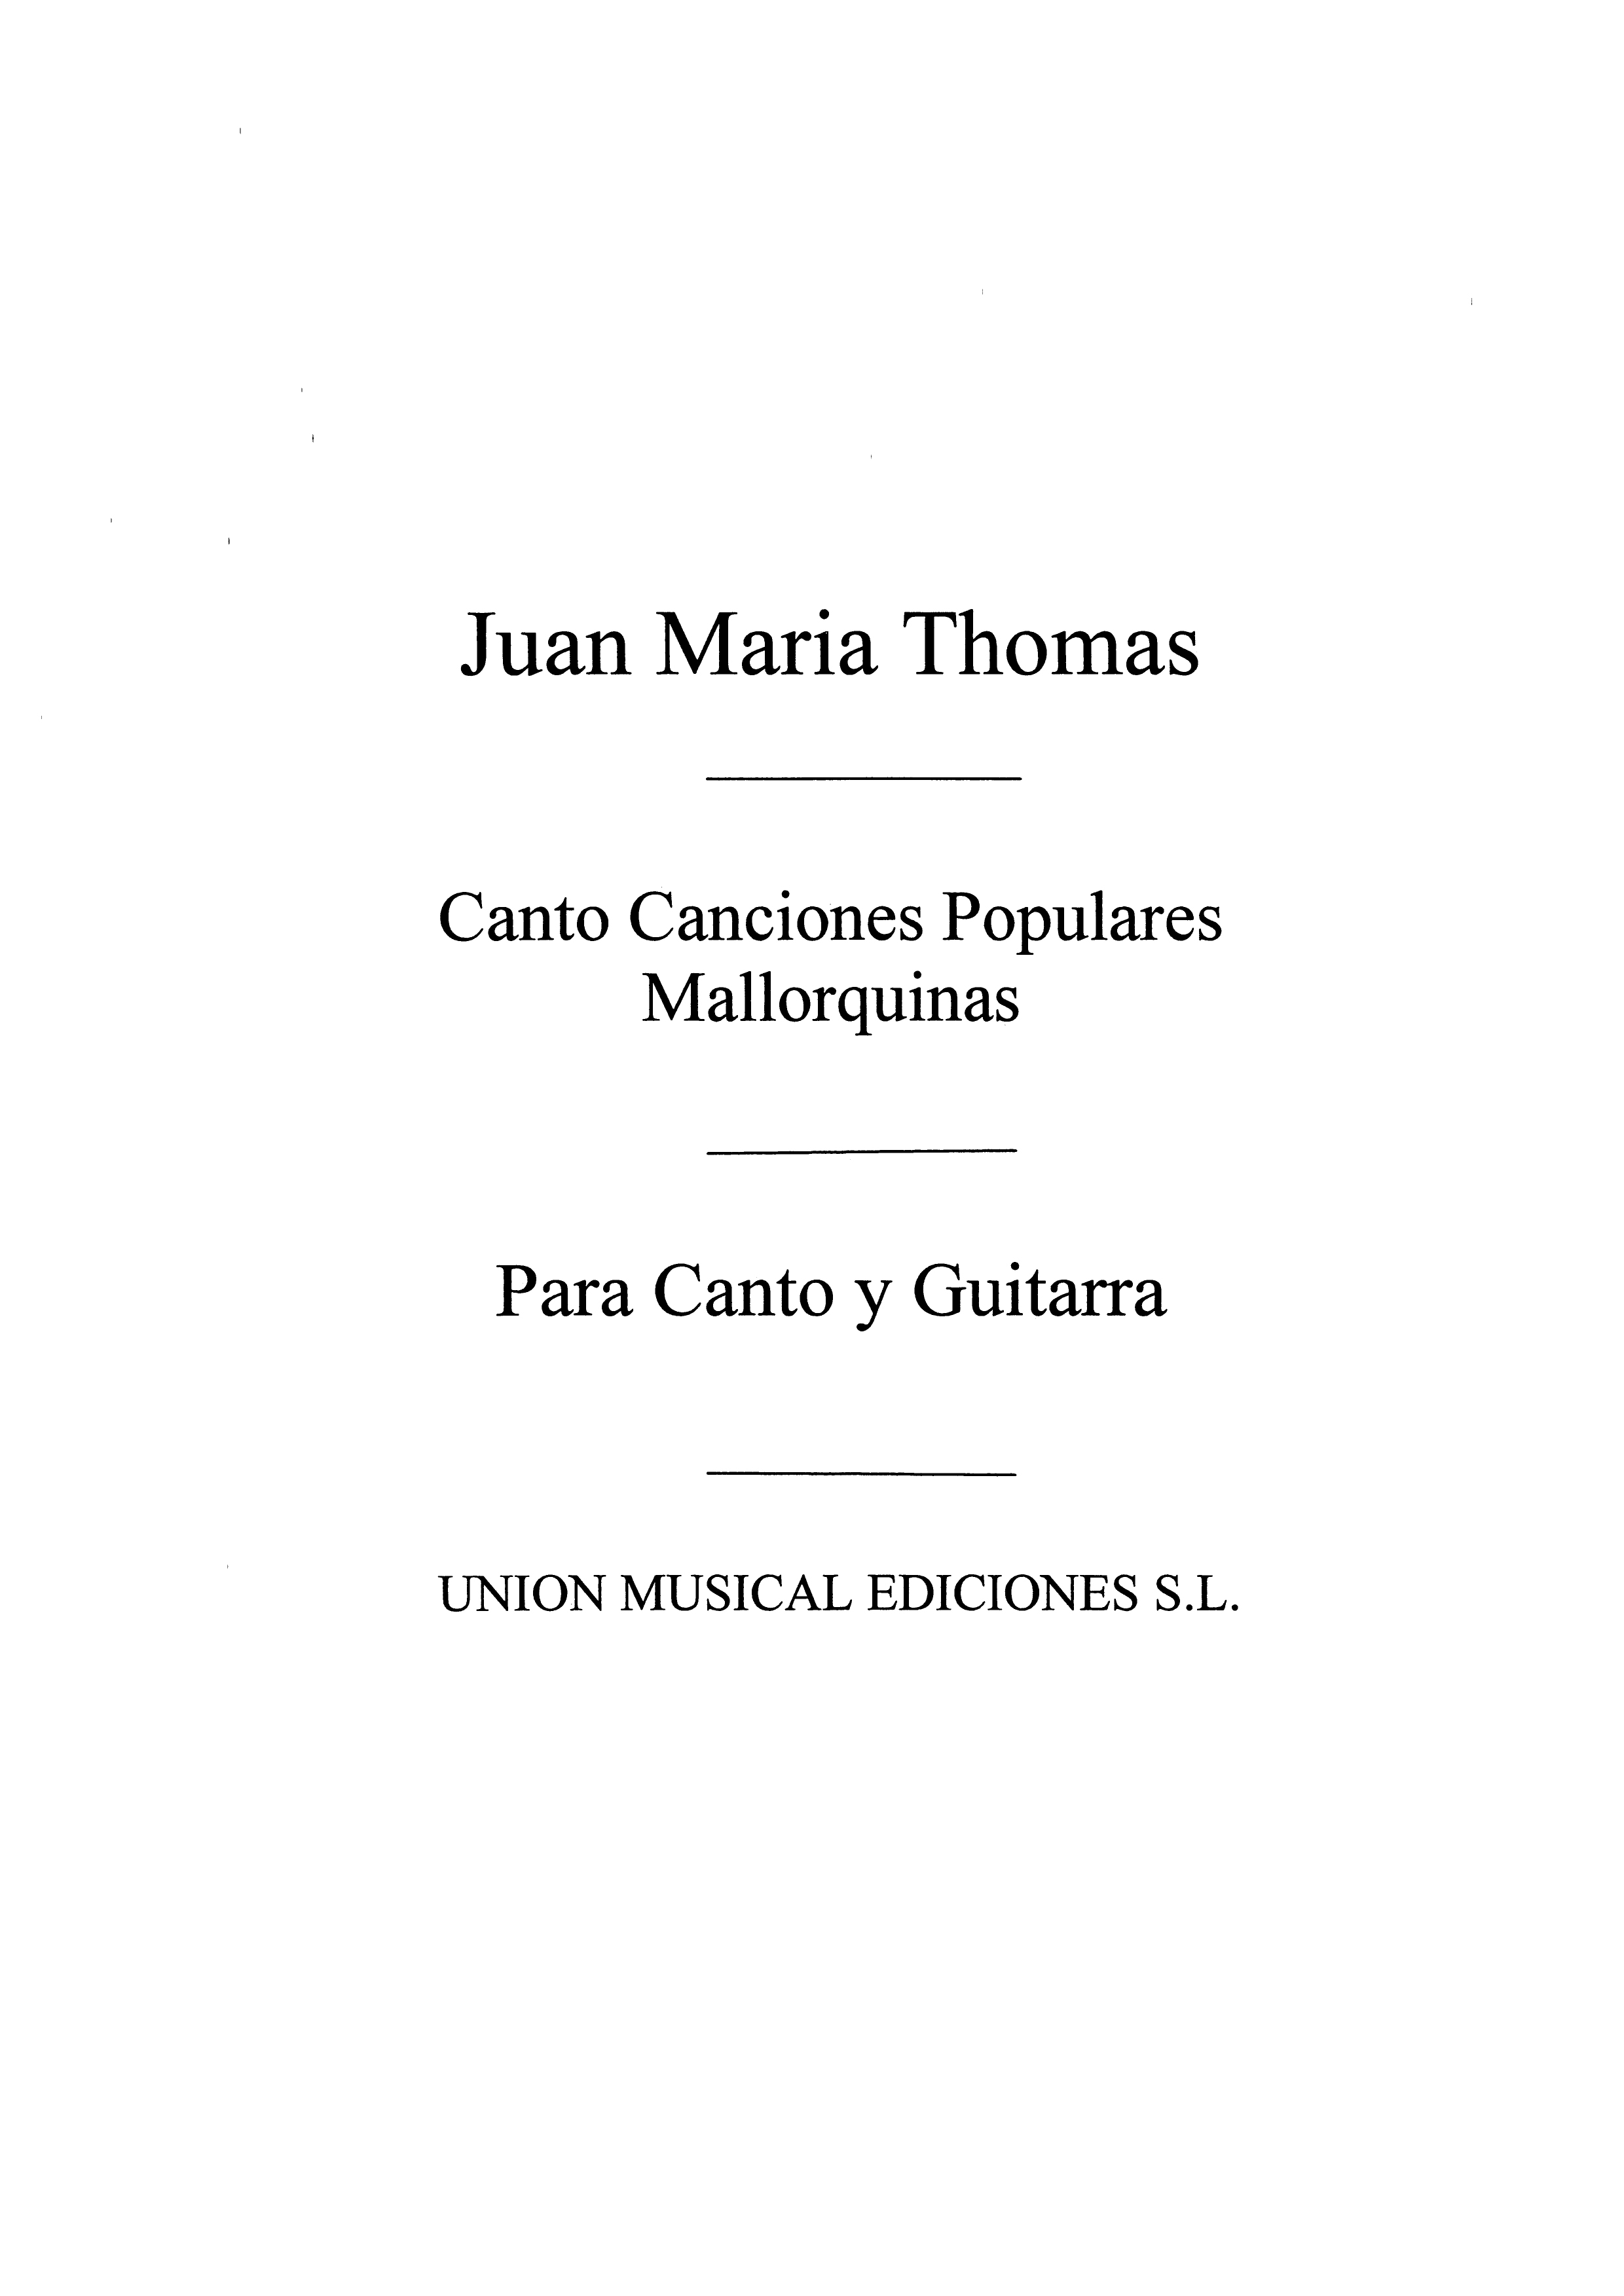 Juan Maria Thomas: Cuatro Canciones Populares Mallorquinas: Voice: Instrumental